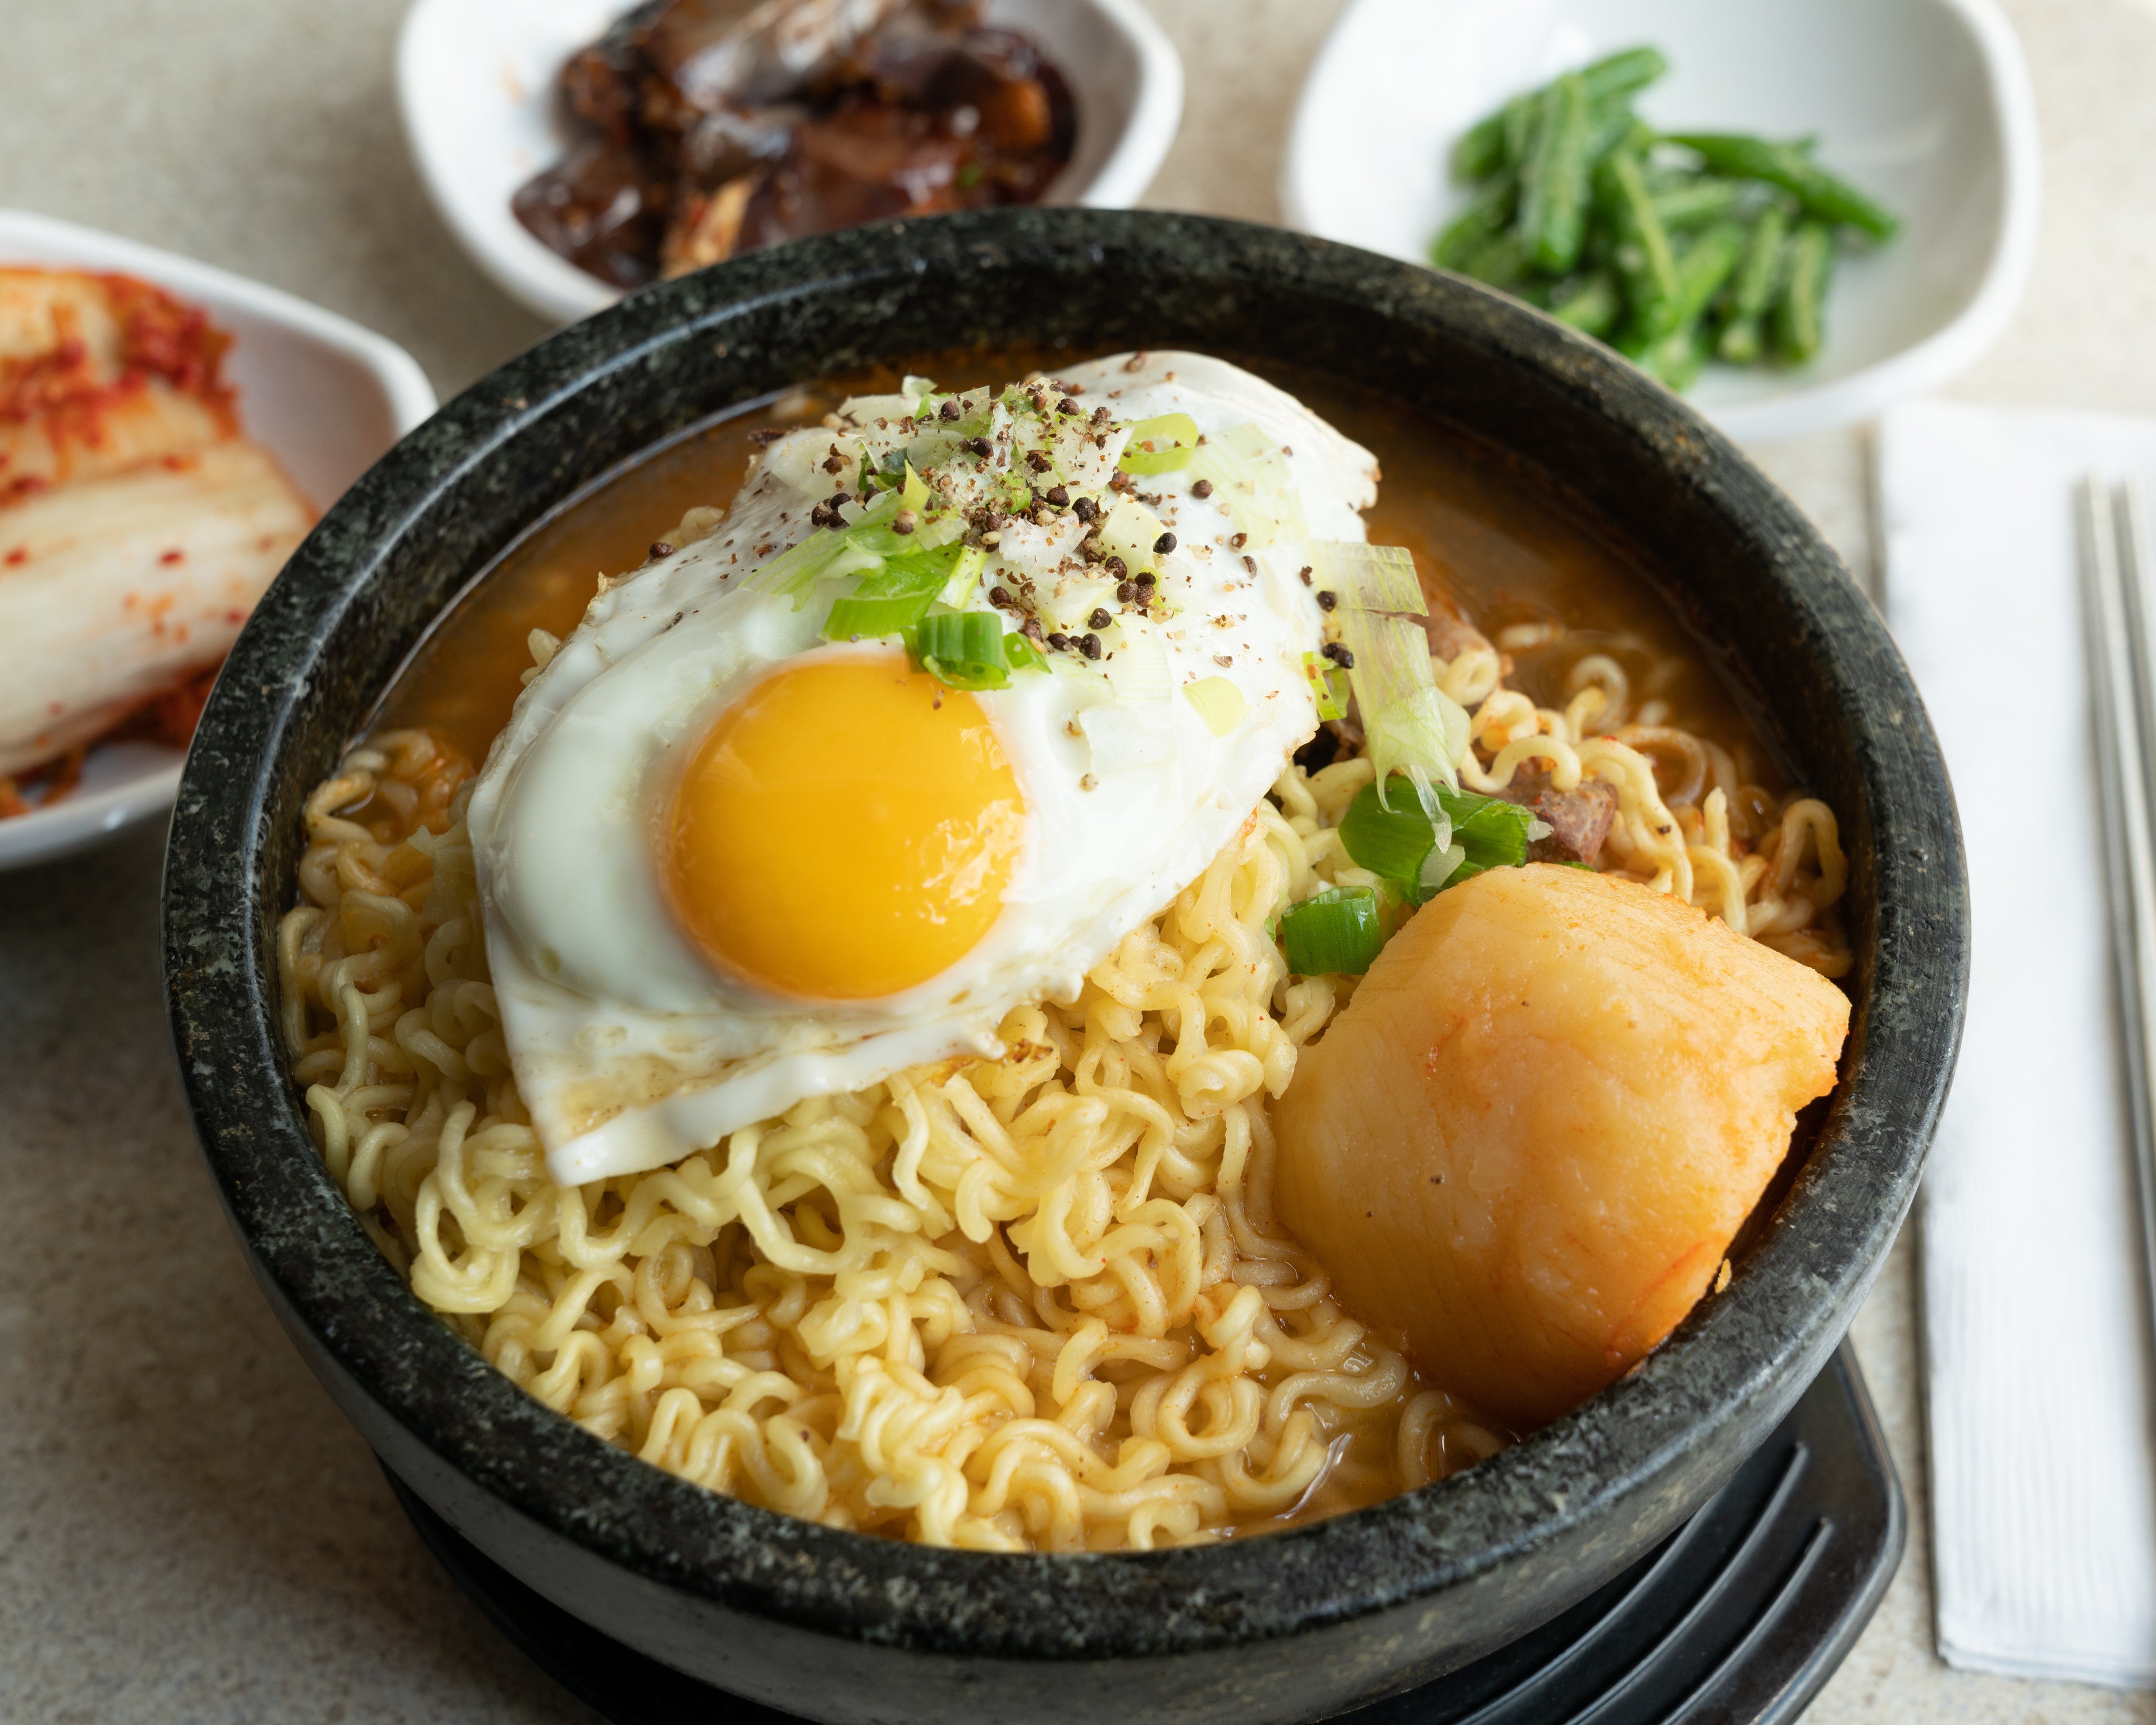 Ramen Pot,Korean Ramen Noodle Pot,Stainless Steel Korean Noodle Pot,Double  Handle Korean Ramen Cooking Pot,Fast Heating,Heating Evenly,Fits